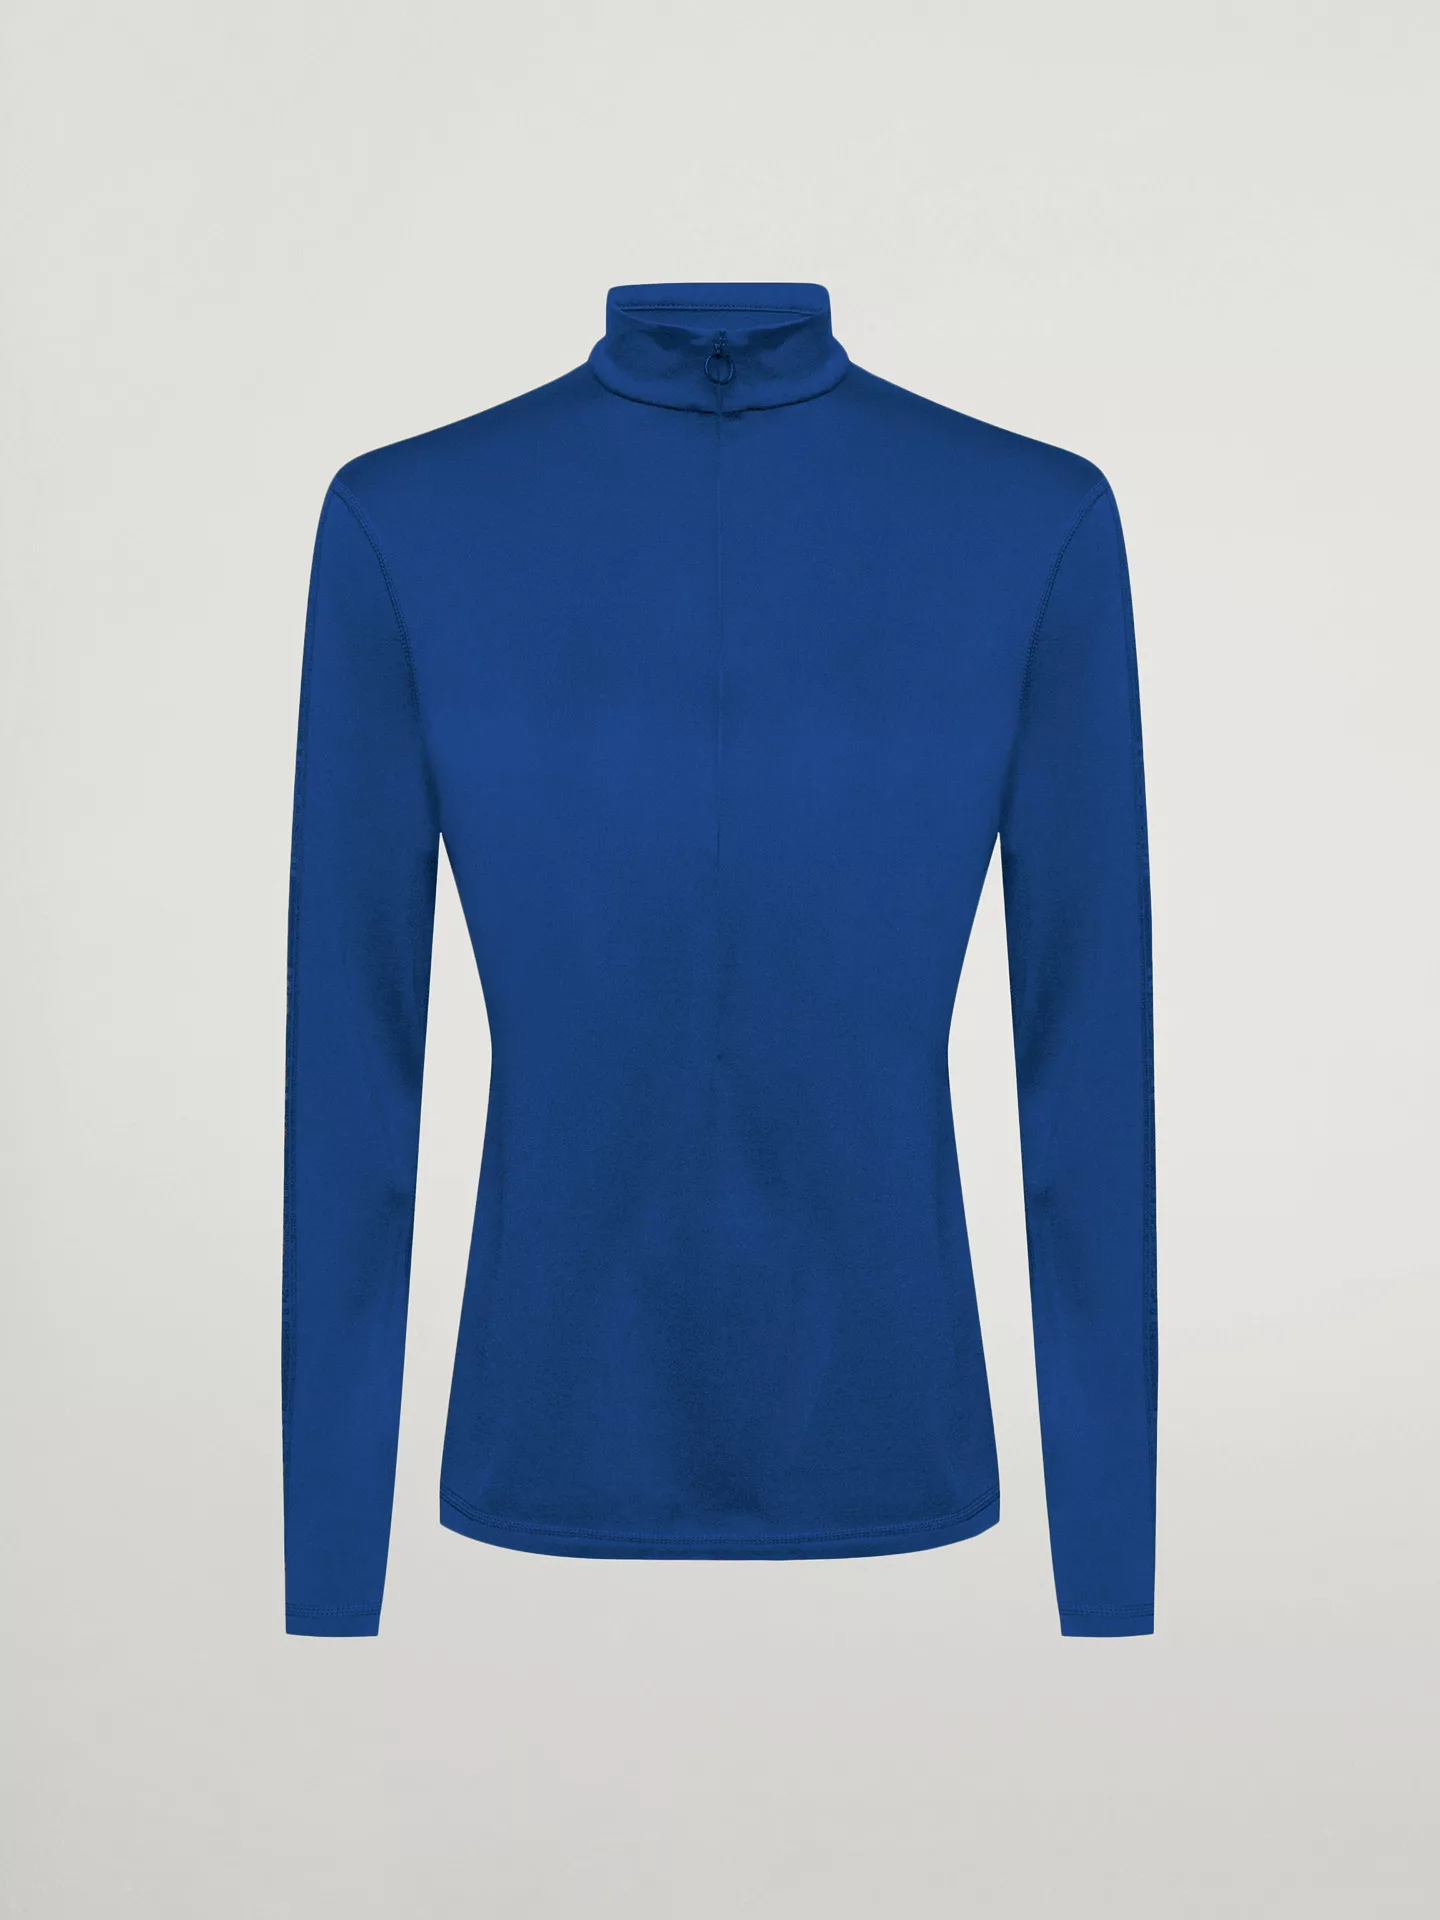 Wolford - Thermal Top Long Sleeves, Frau, sodalite blue, Größe: S günstig online kaufen